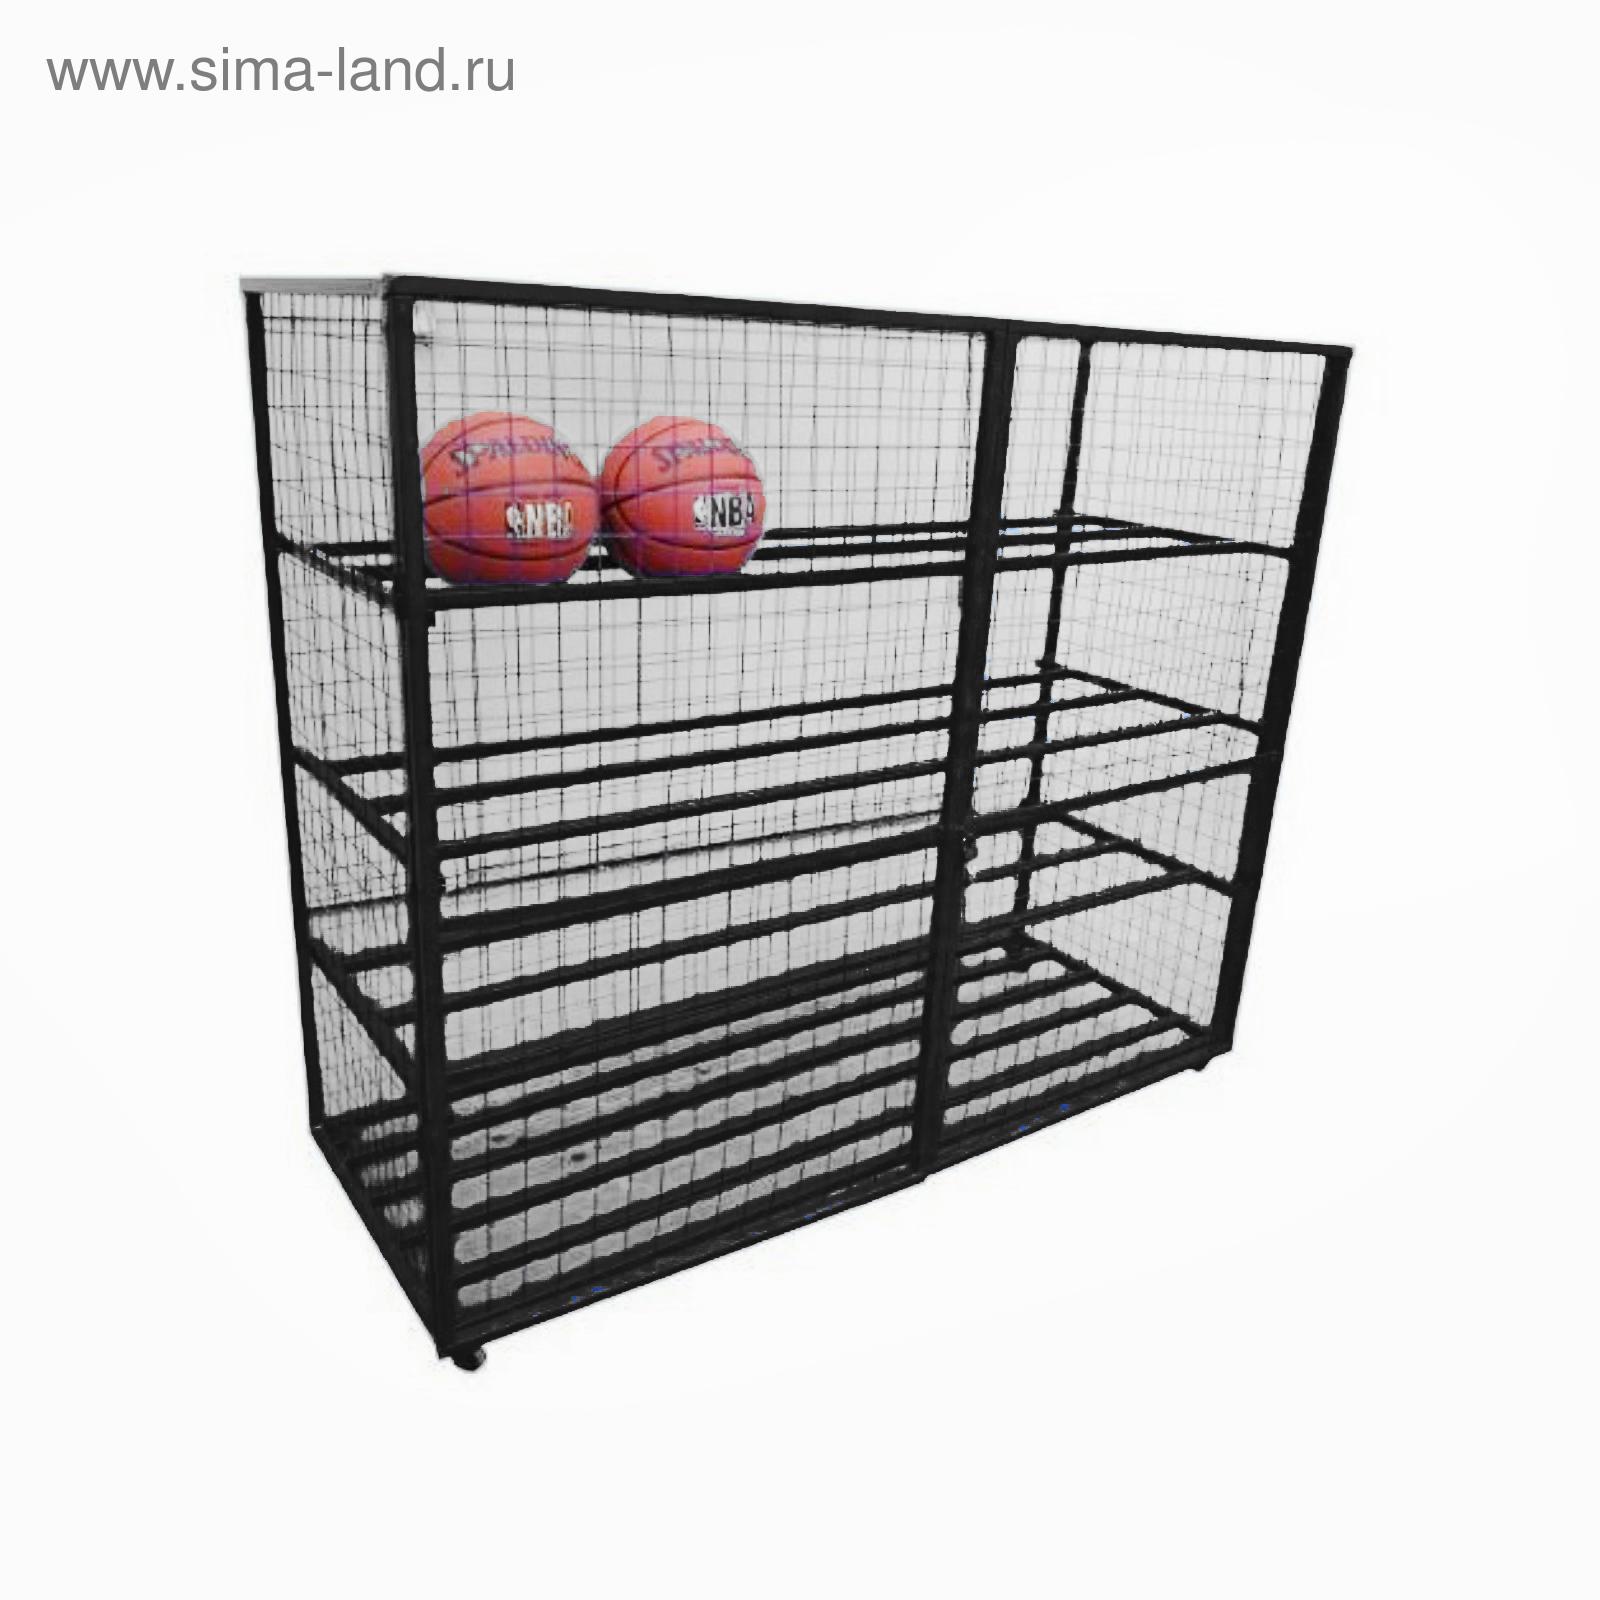 Стеллаж для мячей пластиковый 011-2456 (1010 х 260 х 1660 мм)